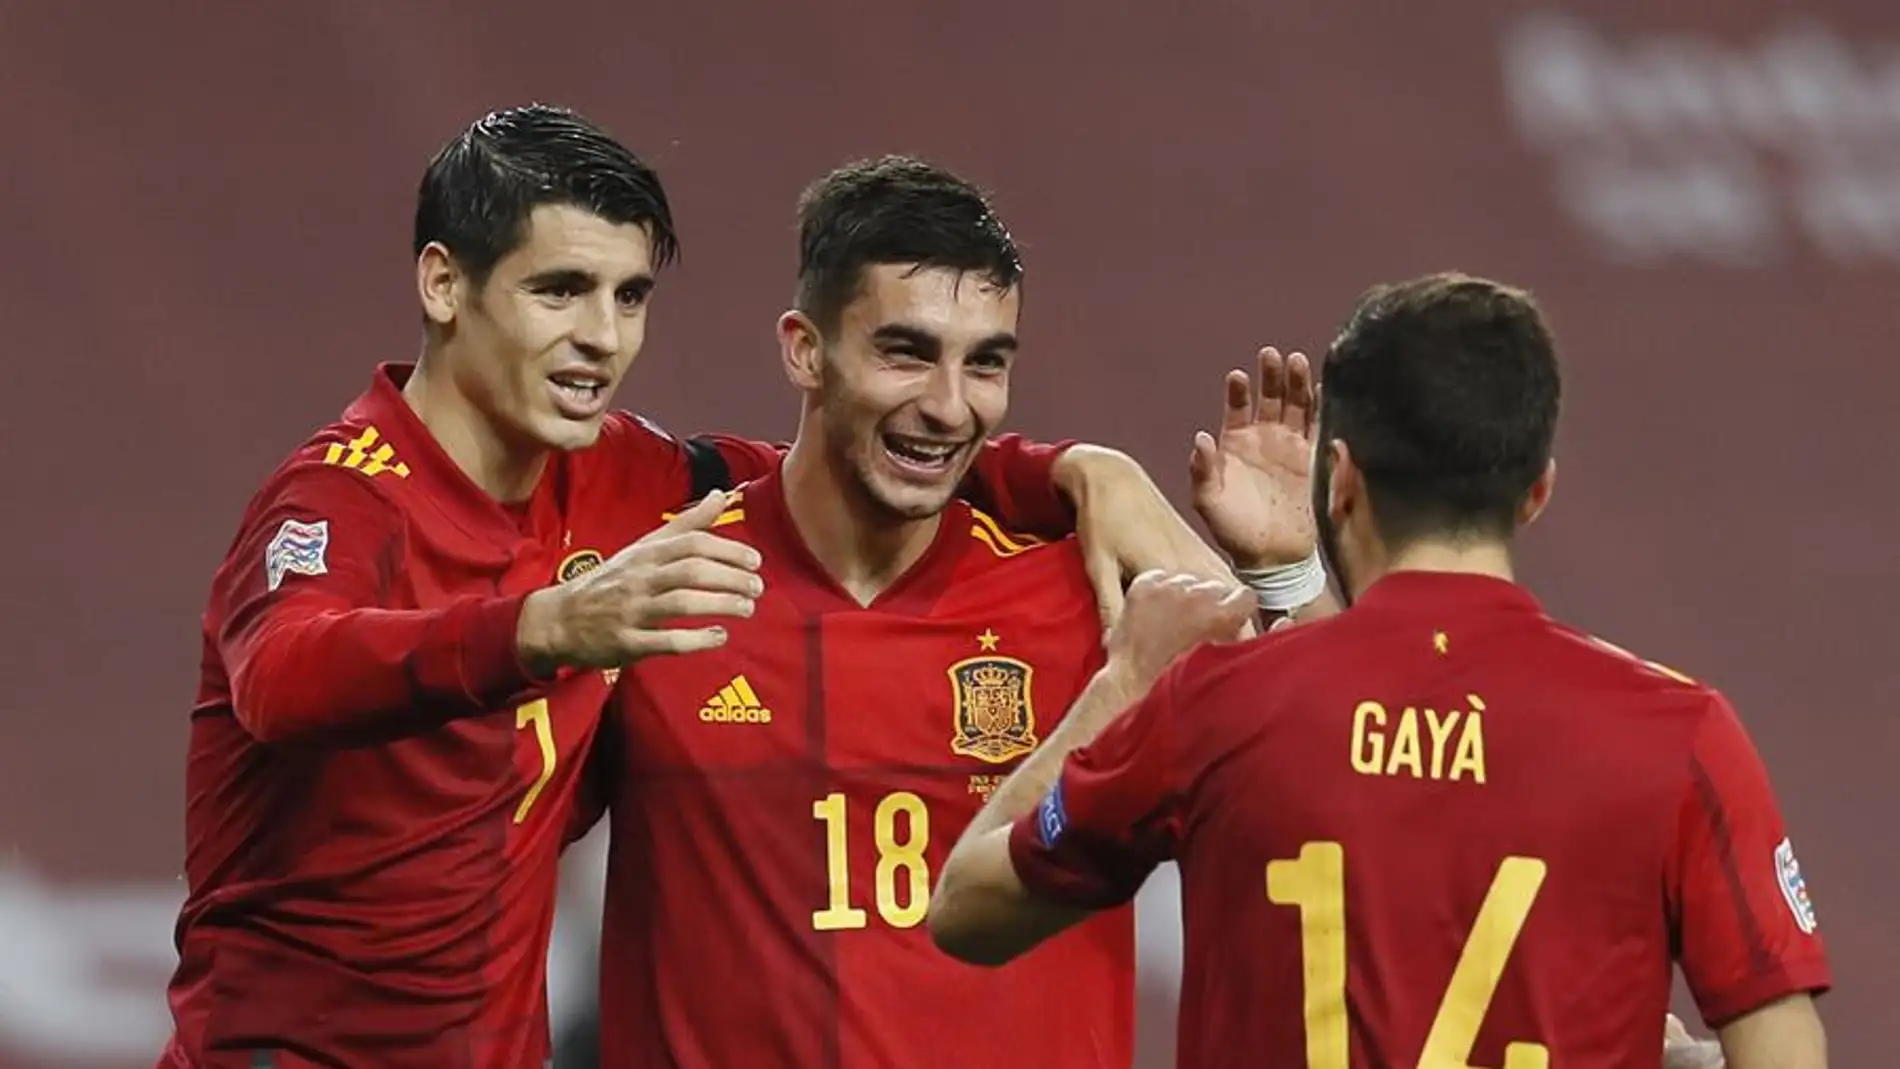 España - Portugal: horario, TV y dónde ver online hoy el partido de la selección española | Onda Cero Radio